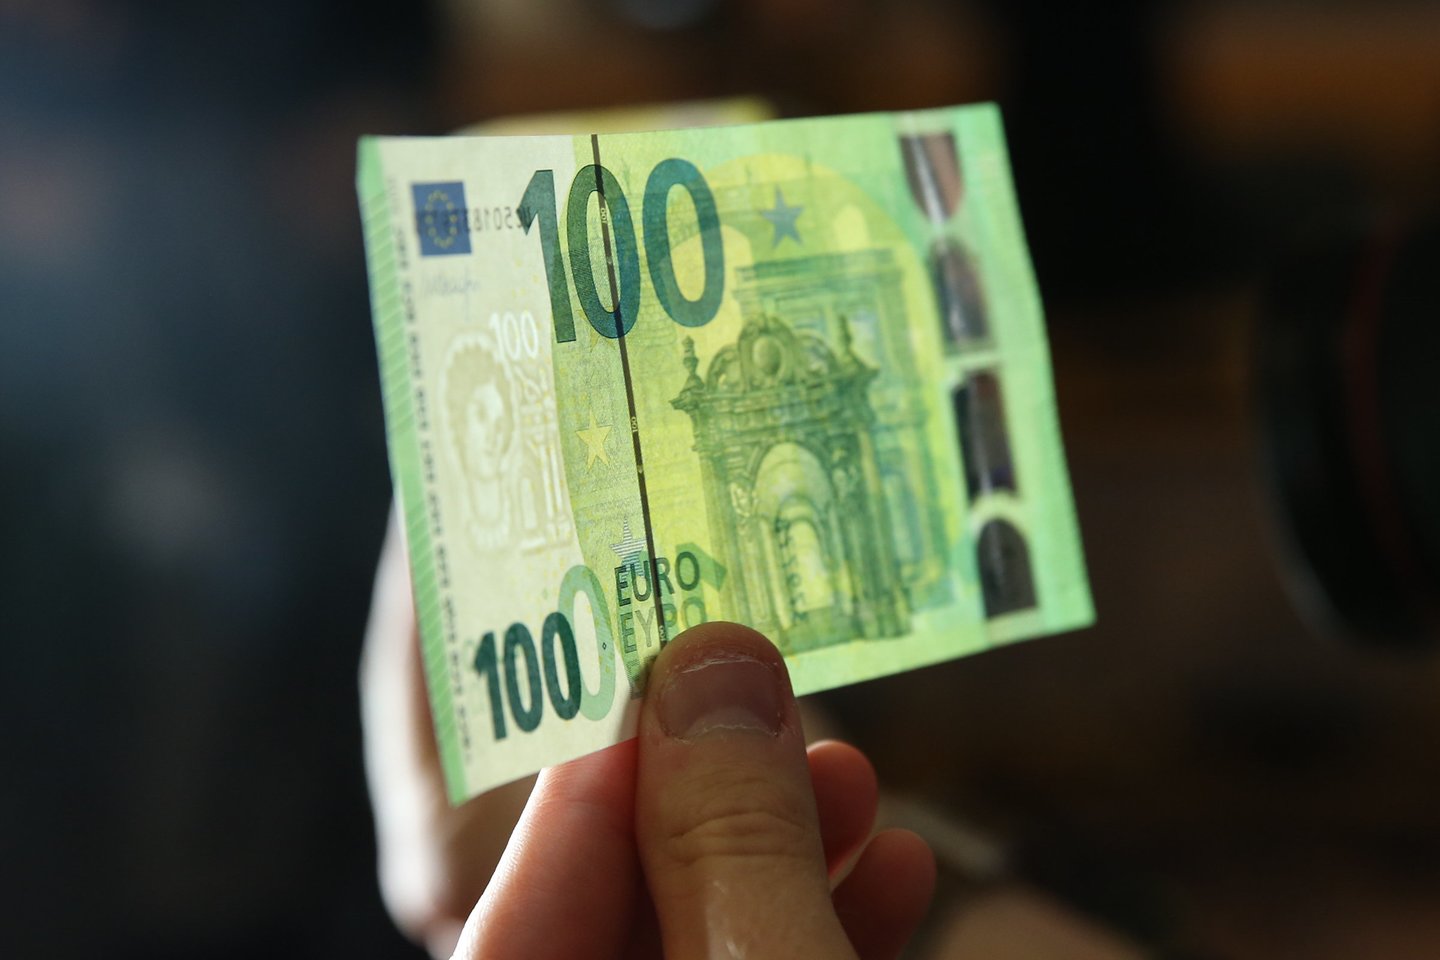 Bedarbis sukčiaudamas išviliojo iš kredito unijos beveik 65 tūkst. eurų.<br>R.Danisevičiaus asociatyvi nuotr.